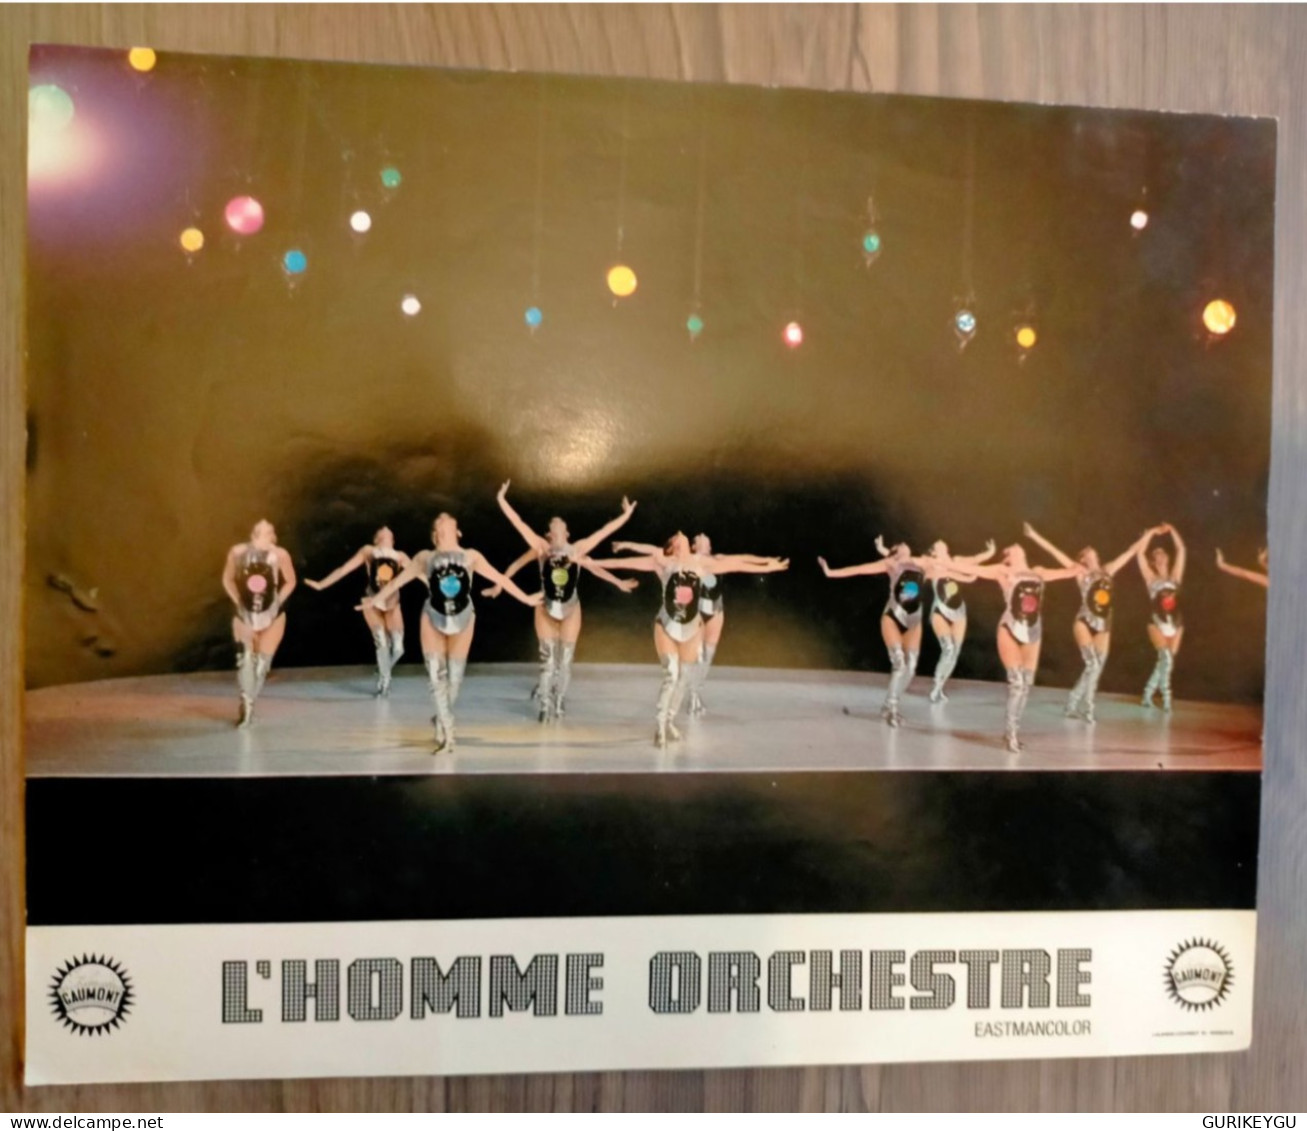 LOUIS DE FUNES Photo Film D'exploitation L'homme Orchestre 28X22cm GAUMONT Eastmancolor - Sonstige Formate